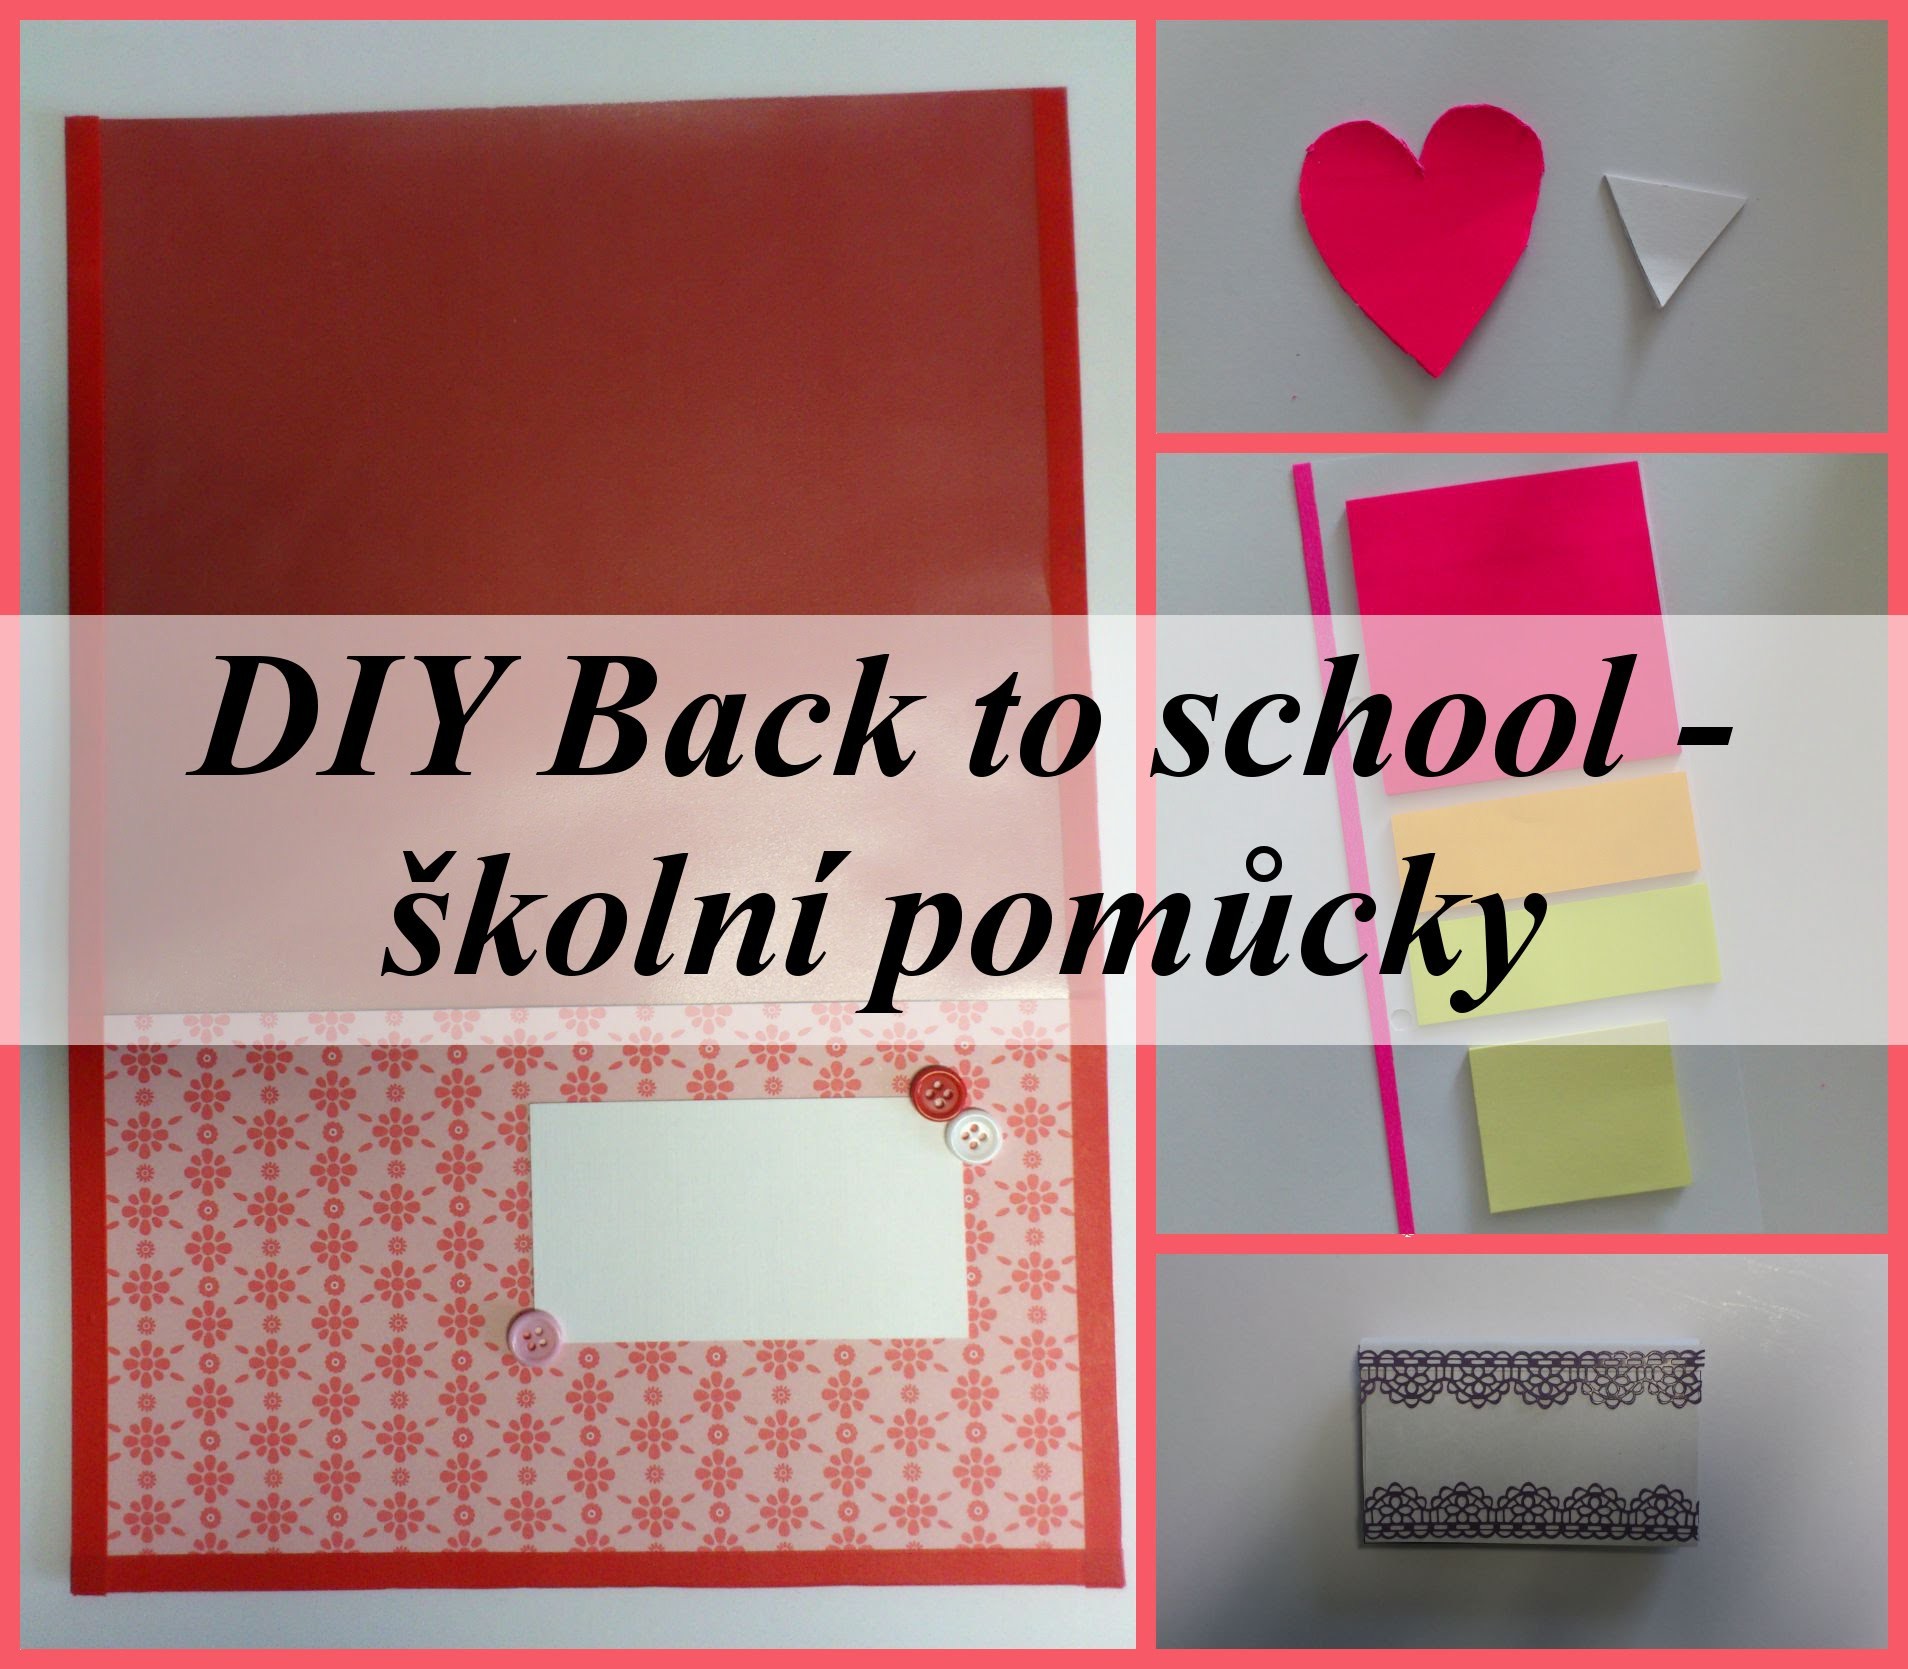 DIY Back to school 2015 - školní pomůcky.school supplies